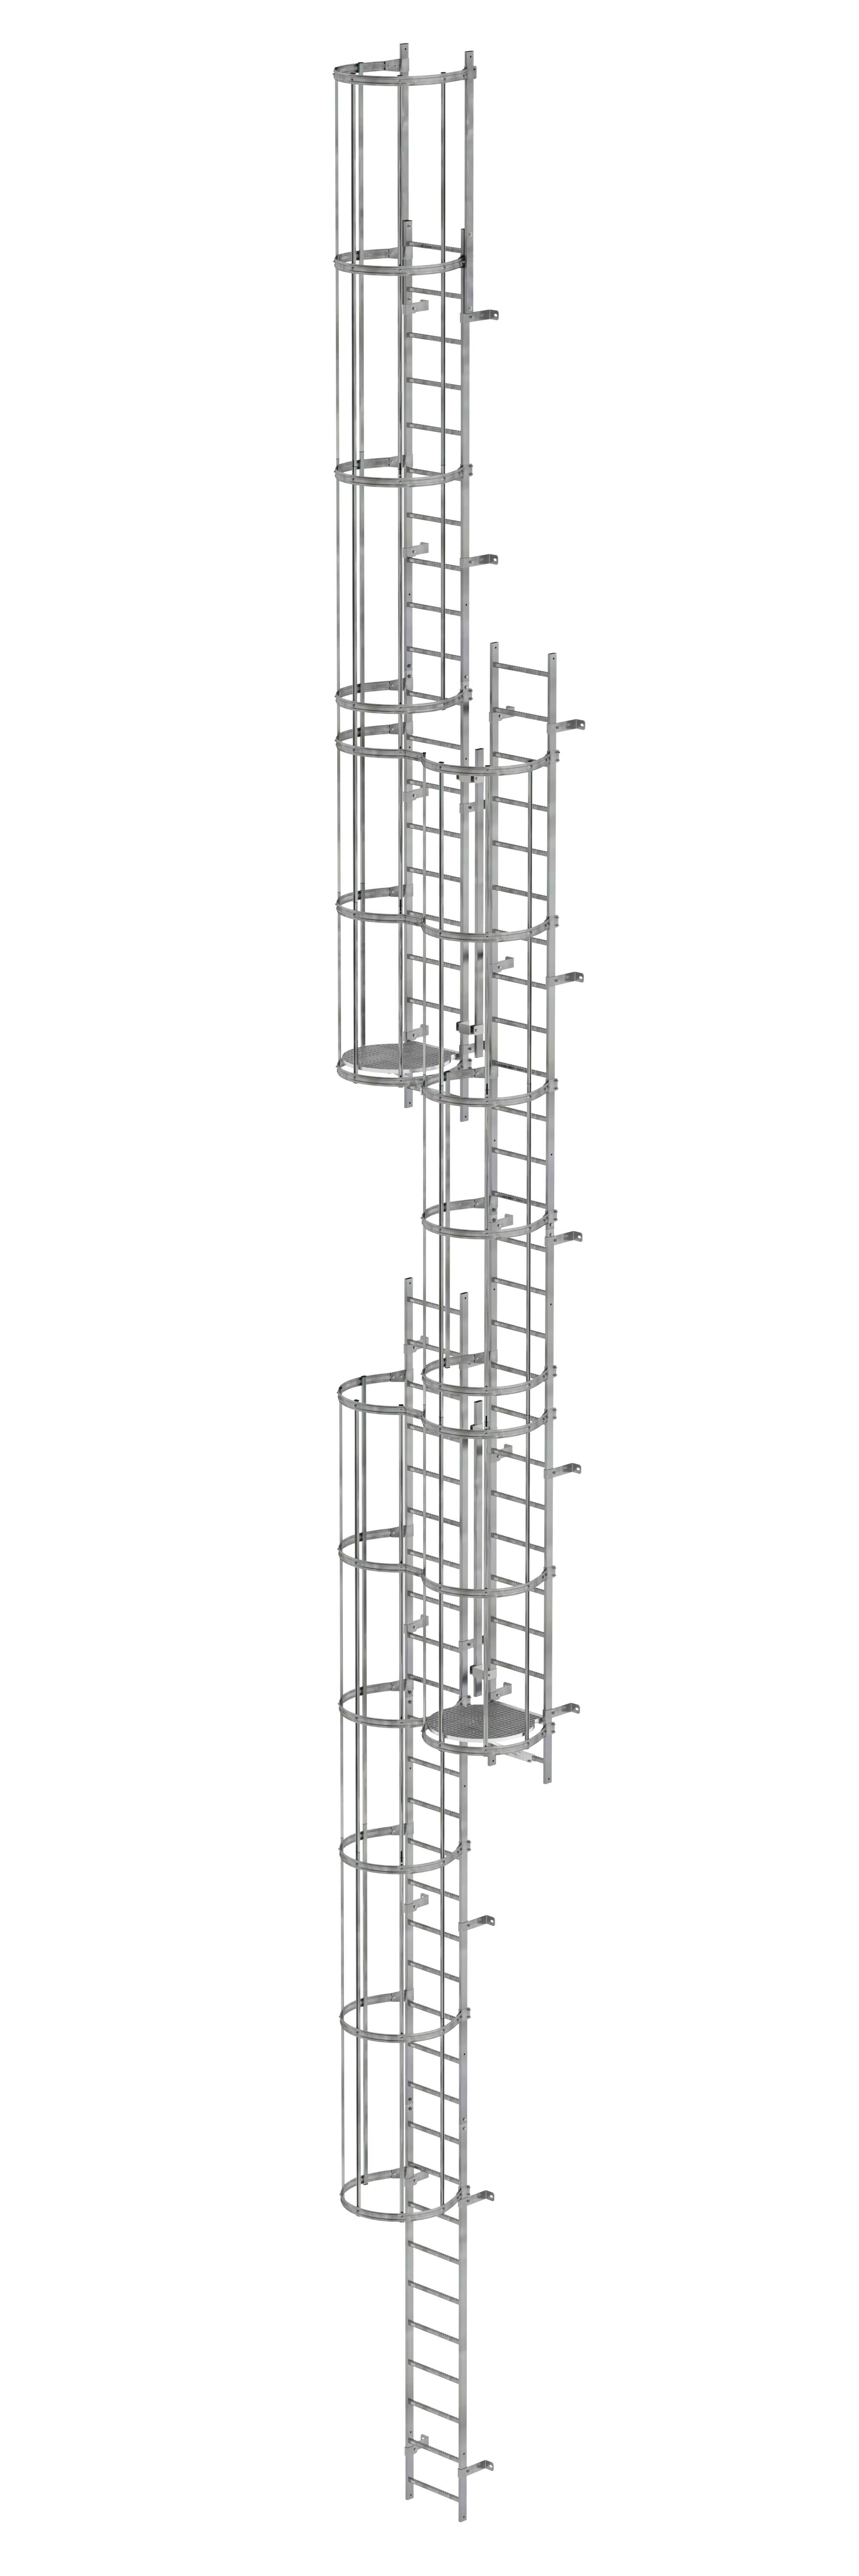 Mehrzügige Steigleiter mit Rückenschutz (Maschinen) Stahl verzinkt 16,32m